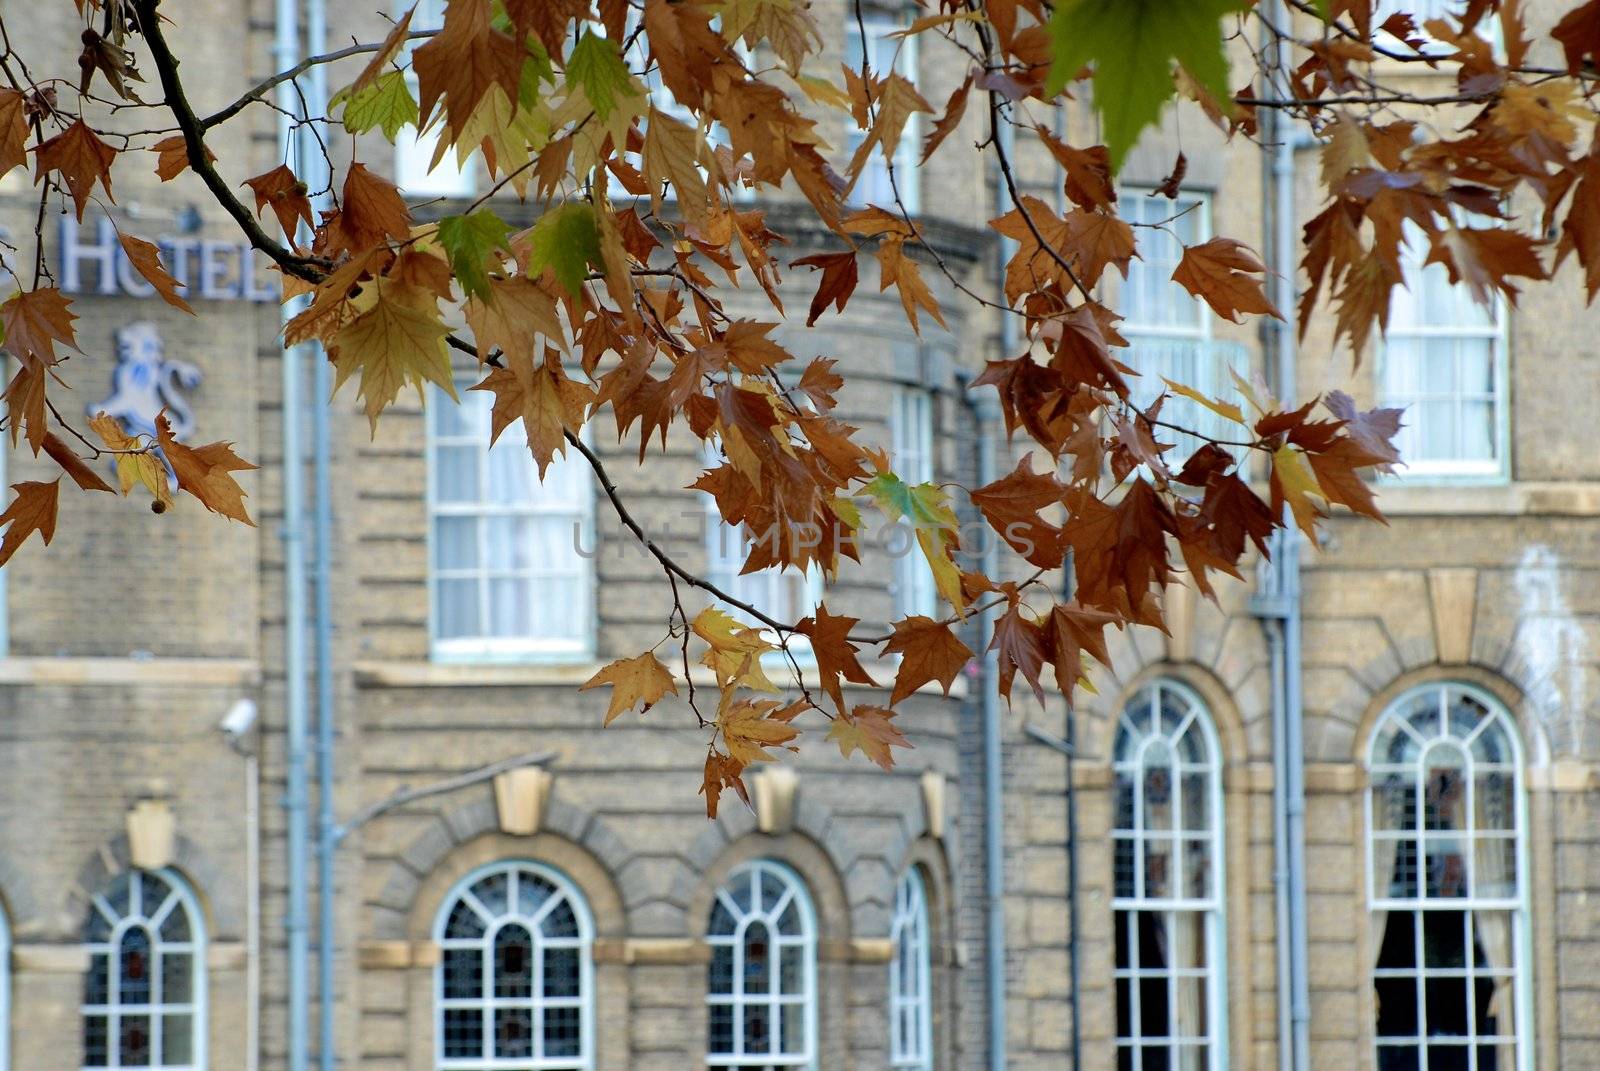 Autumn leaves by Bildehagen